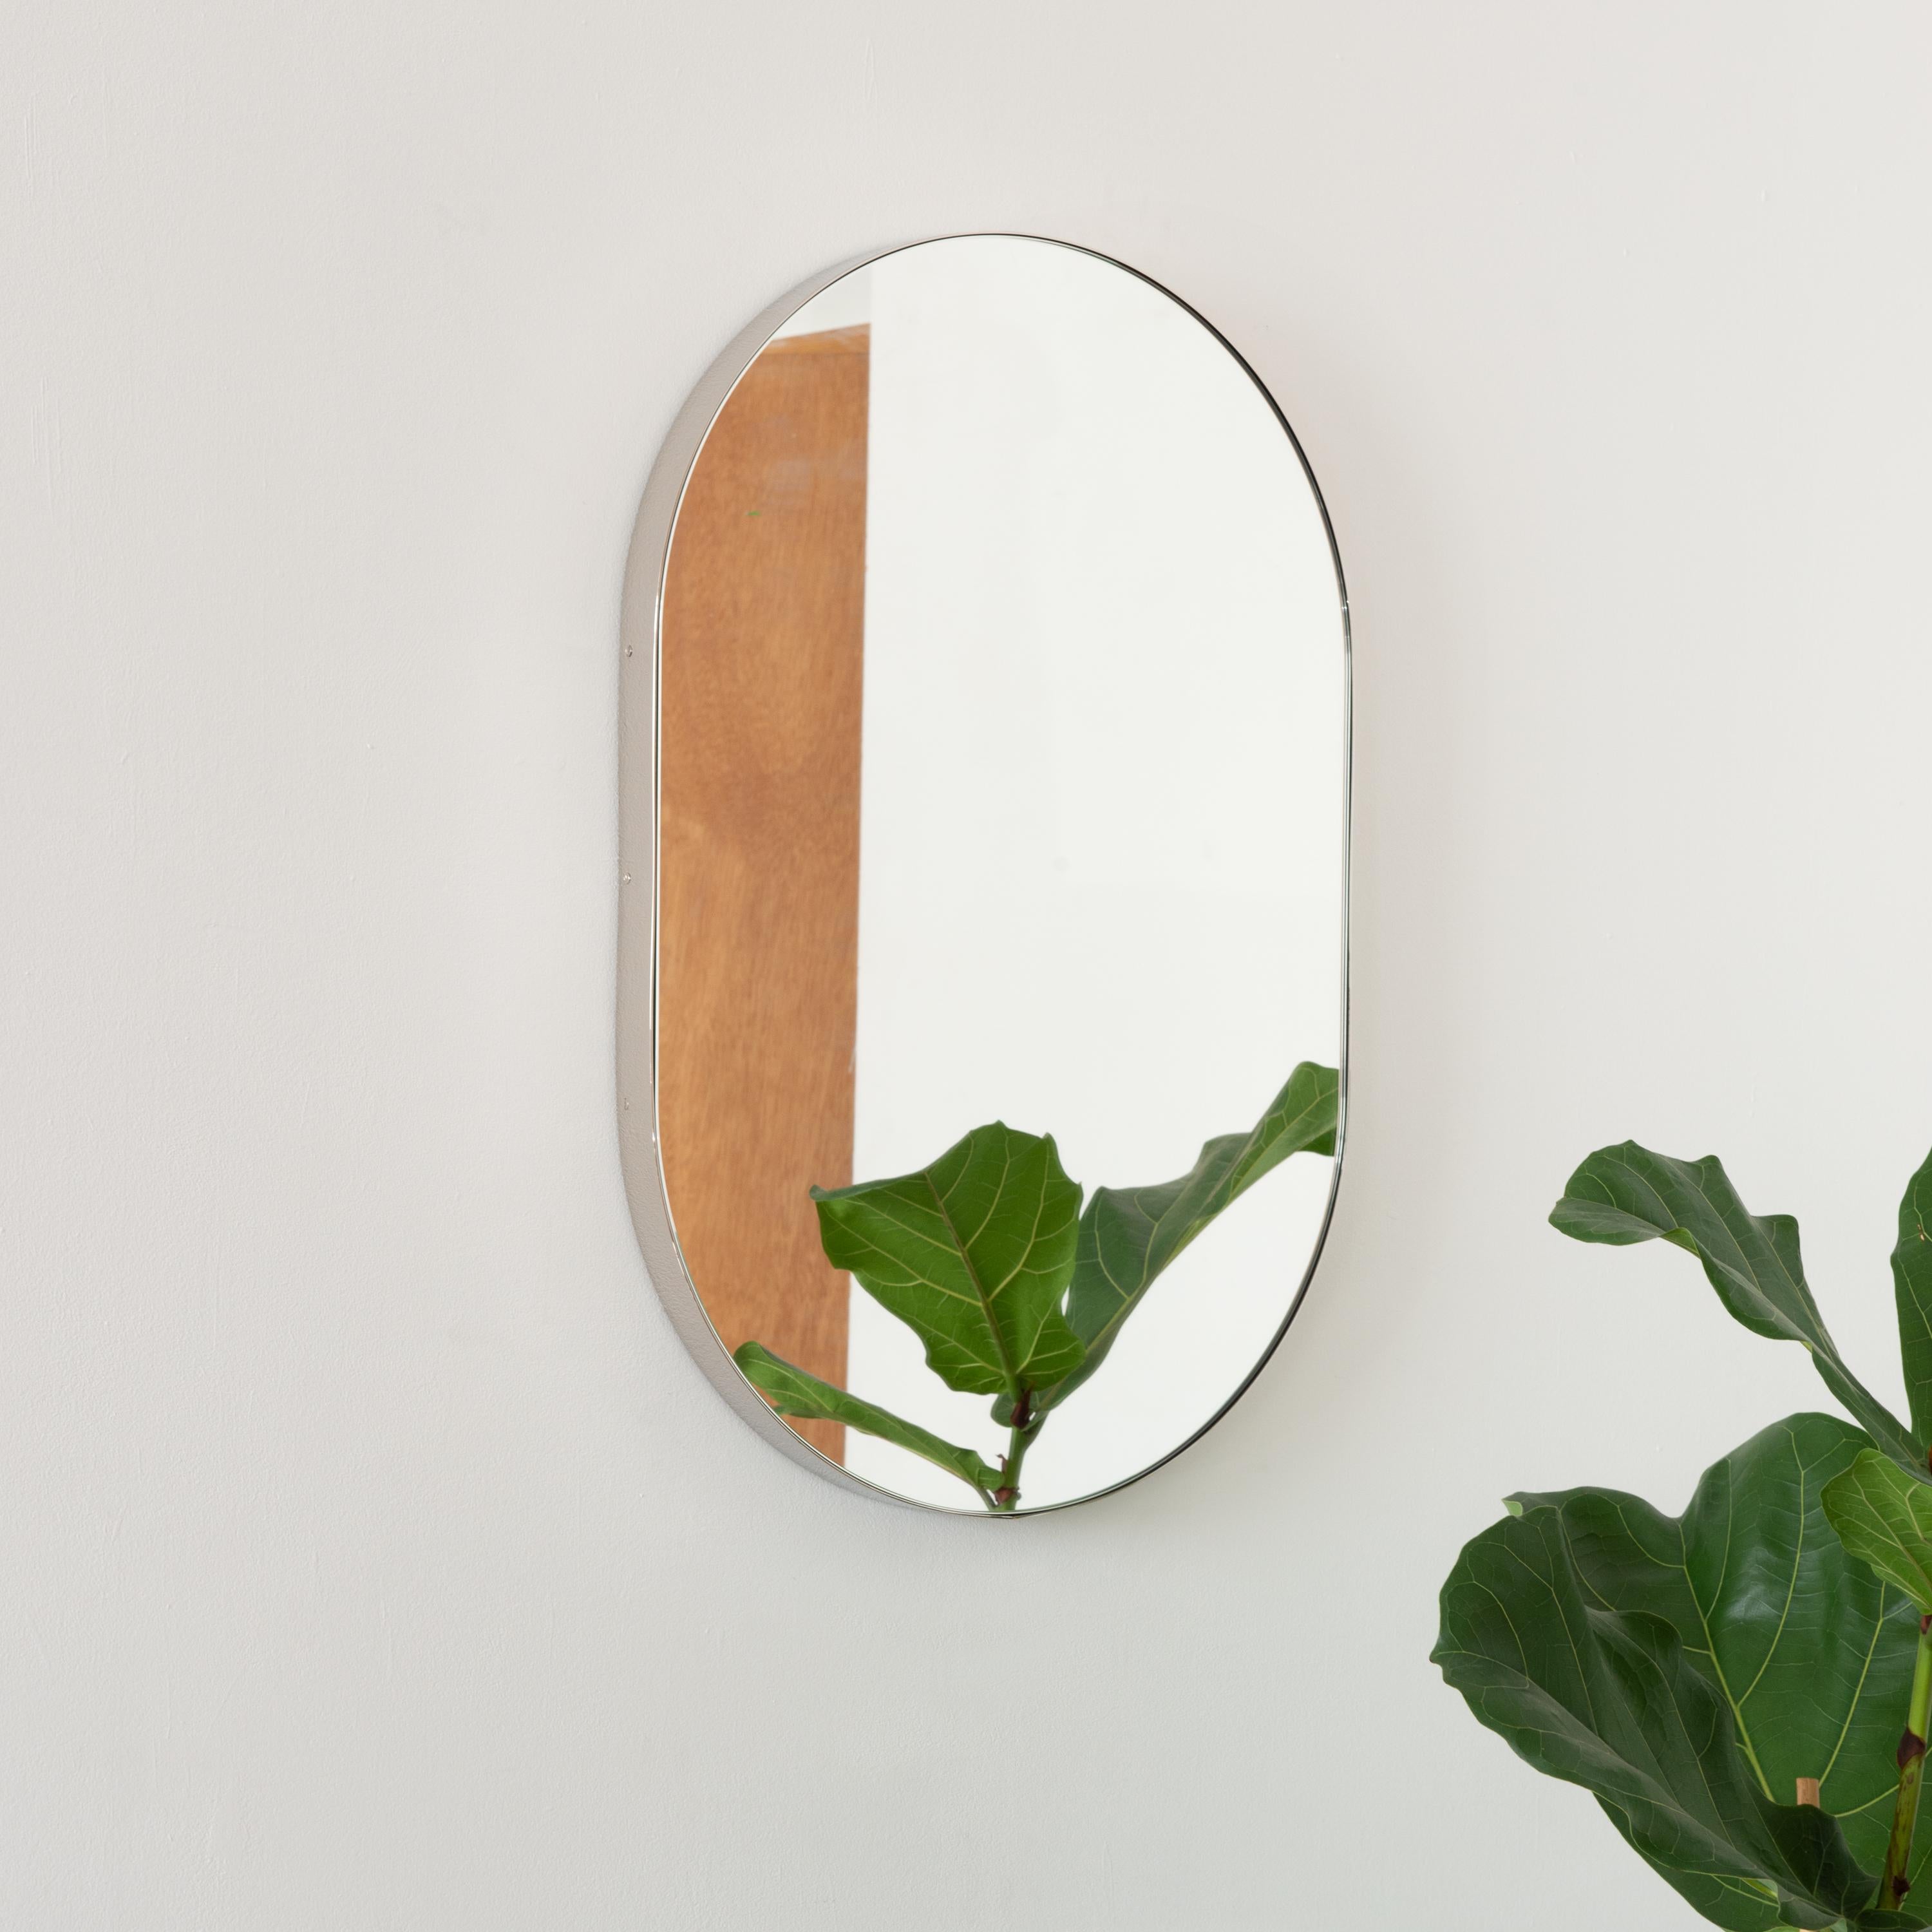 Wunderschöner, kapselförmiger Spiegel mit einem eleganten, vernickelten Rahmen. Entworfen und handgefertigt in London, UK.

Die mittelgroßen, großen und extragroßen Spiegel (37 cm x 56 cm, 46 cm x 71 cm und 48 cm x 97 cm) sind mit einem